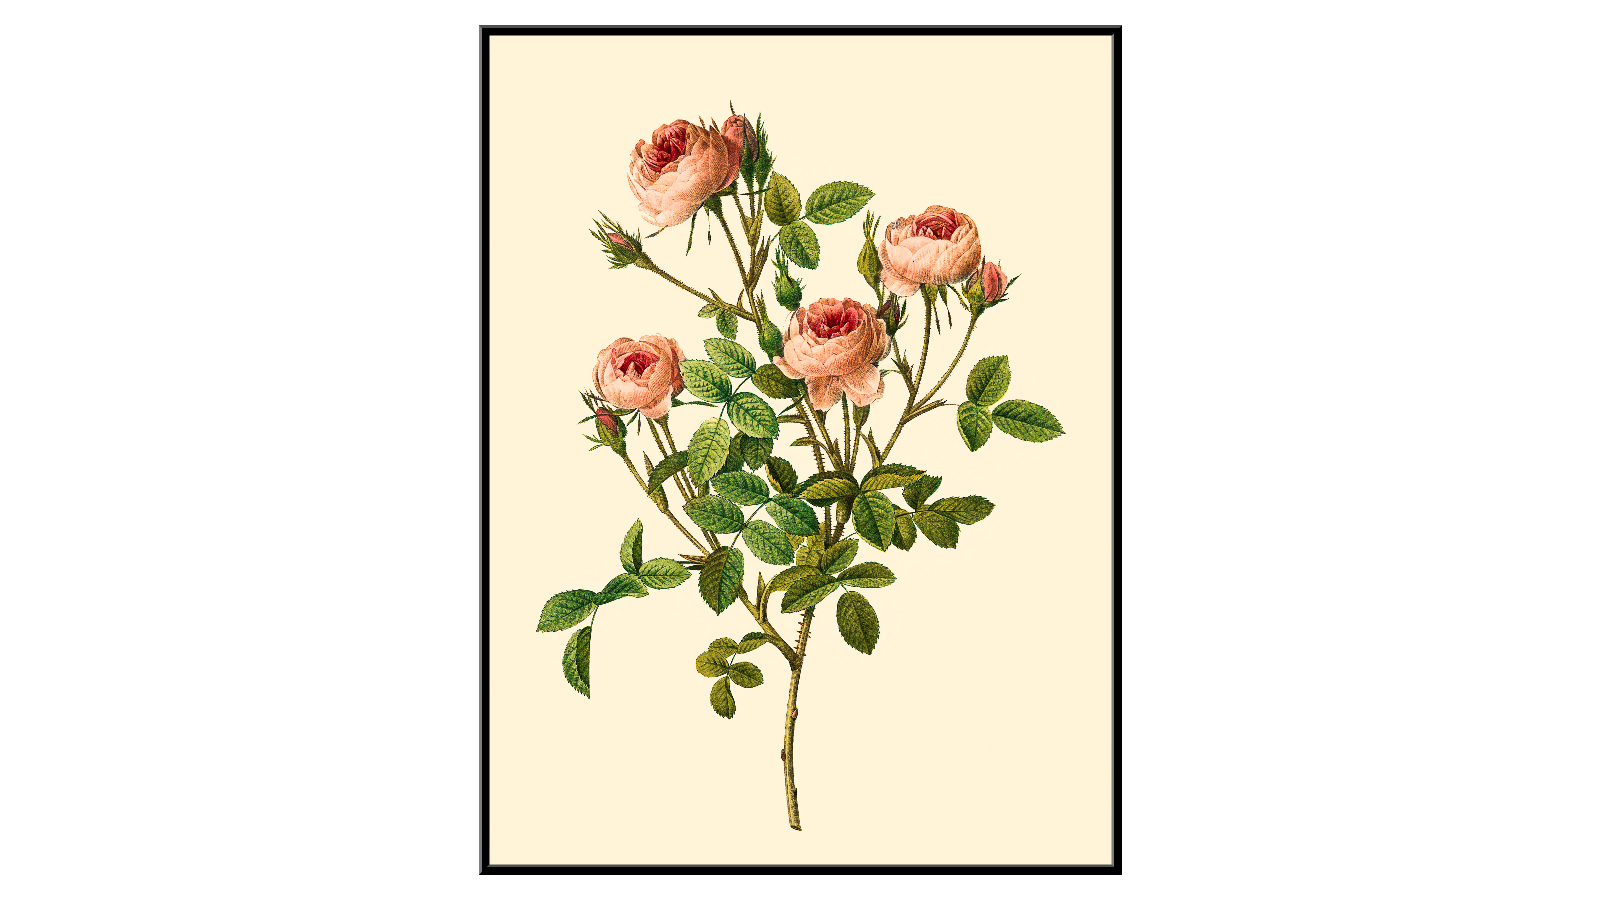 Rose variety de Meaux - Pierre-Joseph Redouté